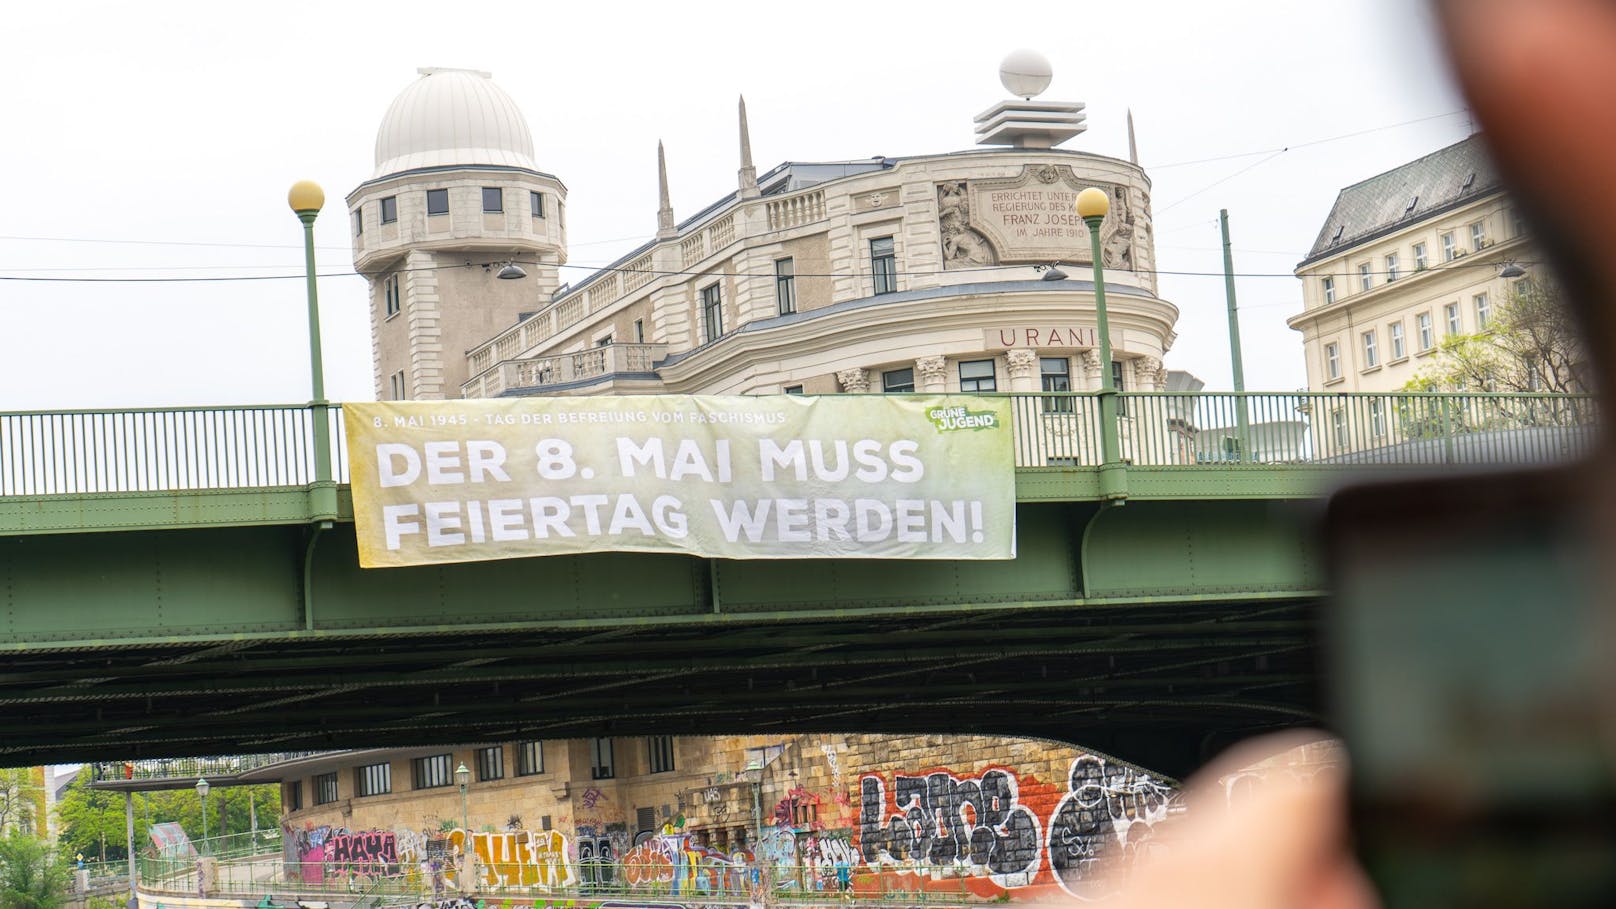 Die Grüne Jugend will dass der 8. Mai ein gesetzlicher Feiertag wird. Dazu hisste man ein Transparent auf der Aspernbrücke in Wien.